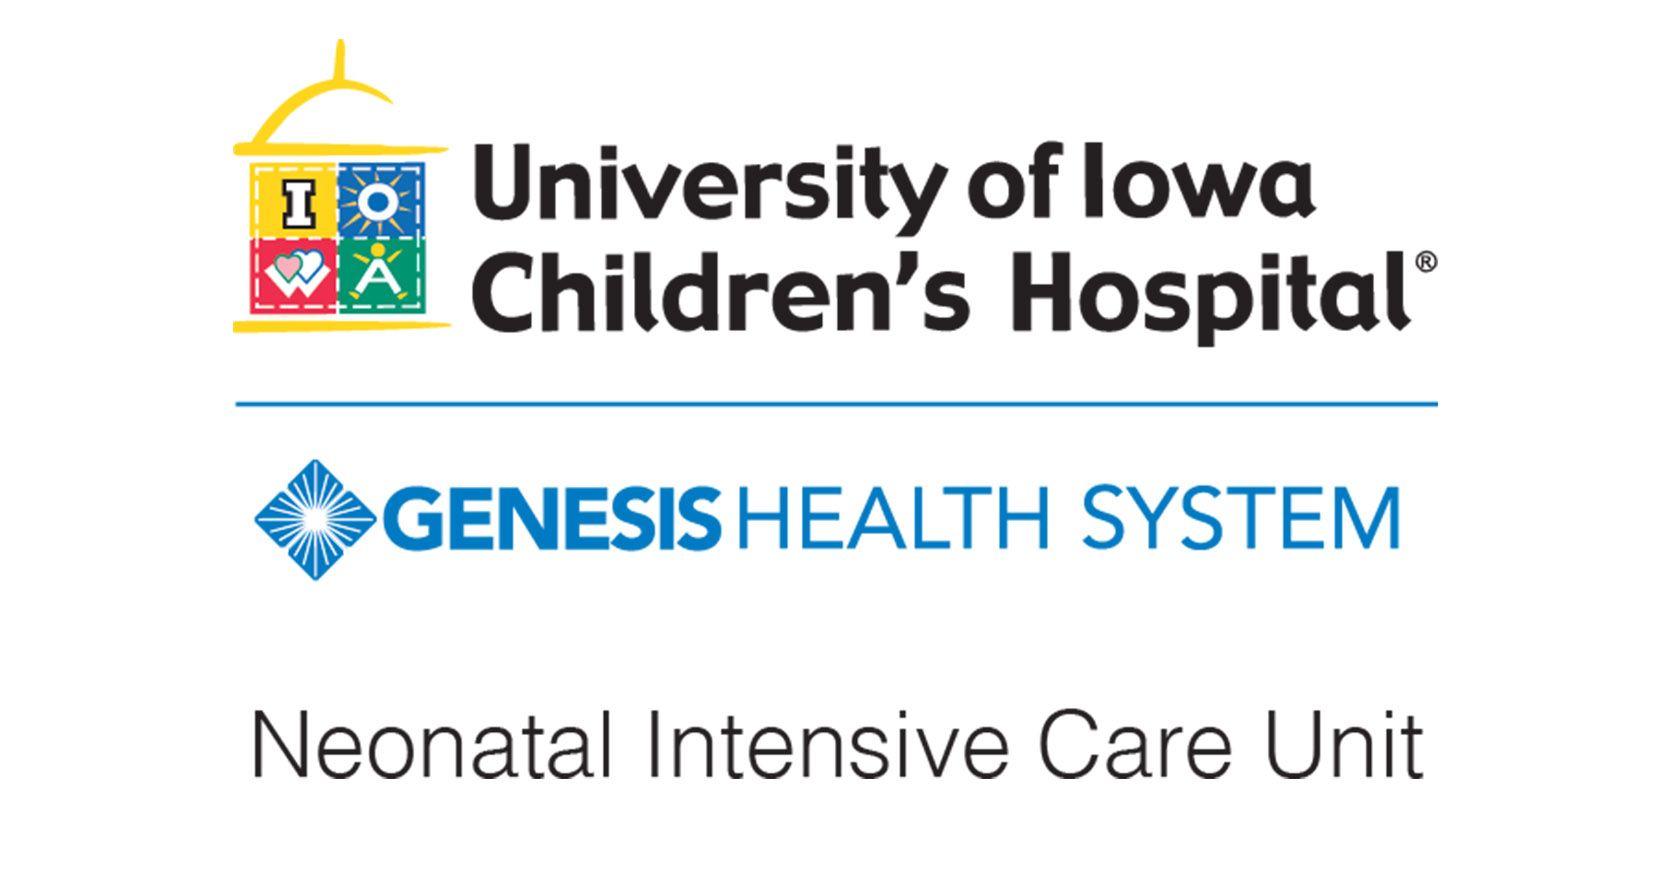 Genesis Health System Logo - Genesis Neonatal Intensive Care Unit (NICU) - Genesis Health System